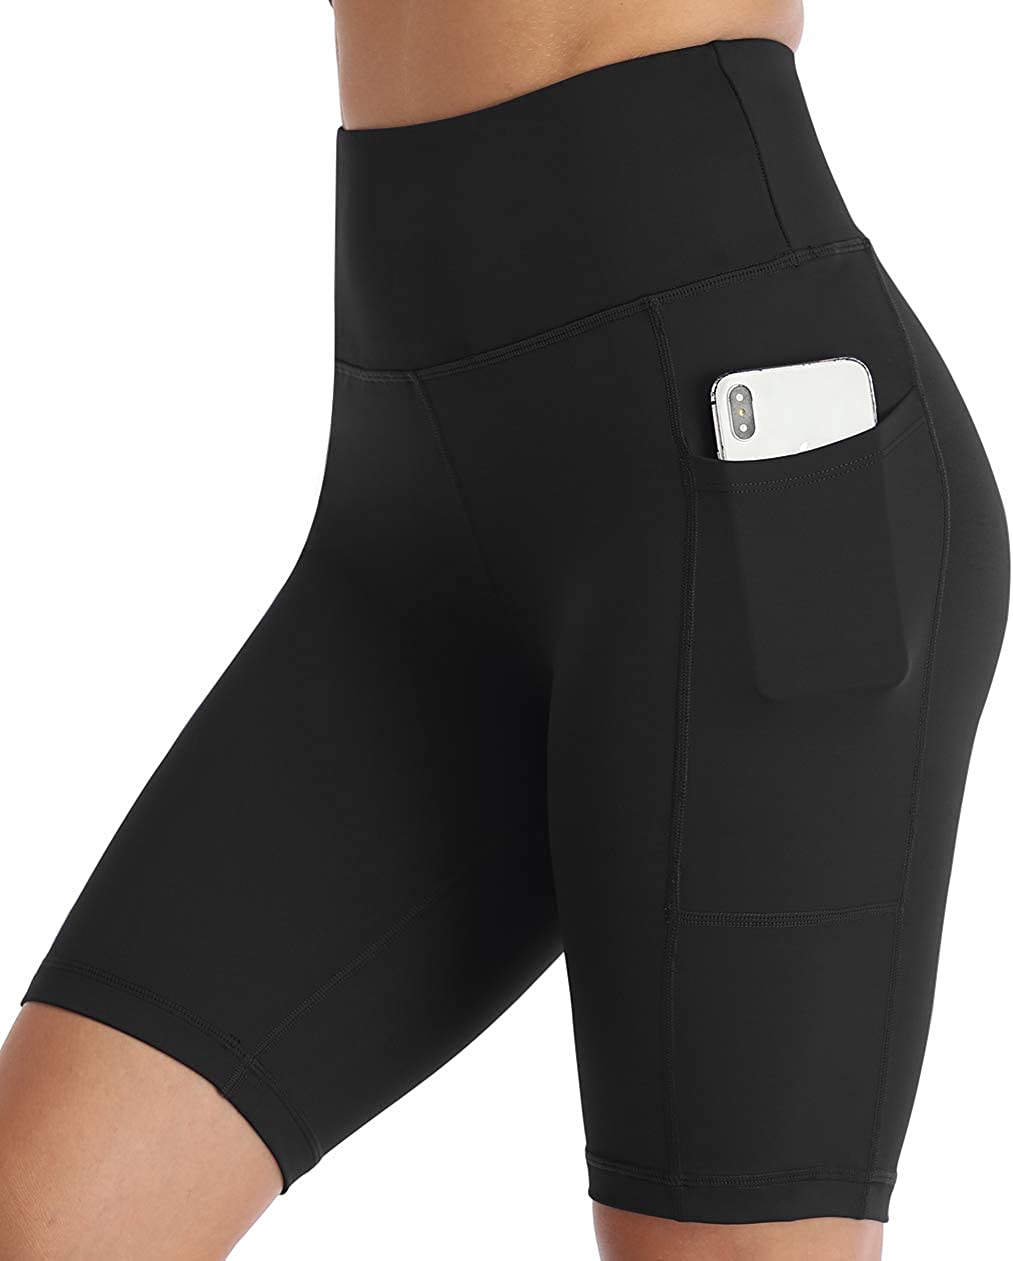 Amazon Essentials Women’s Shorts